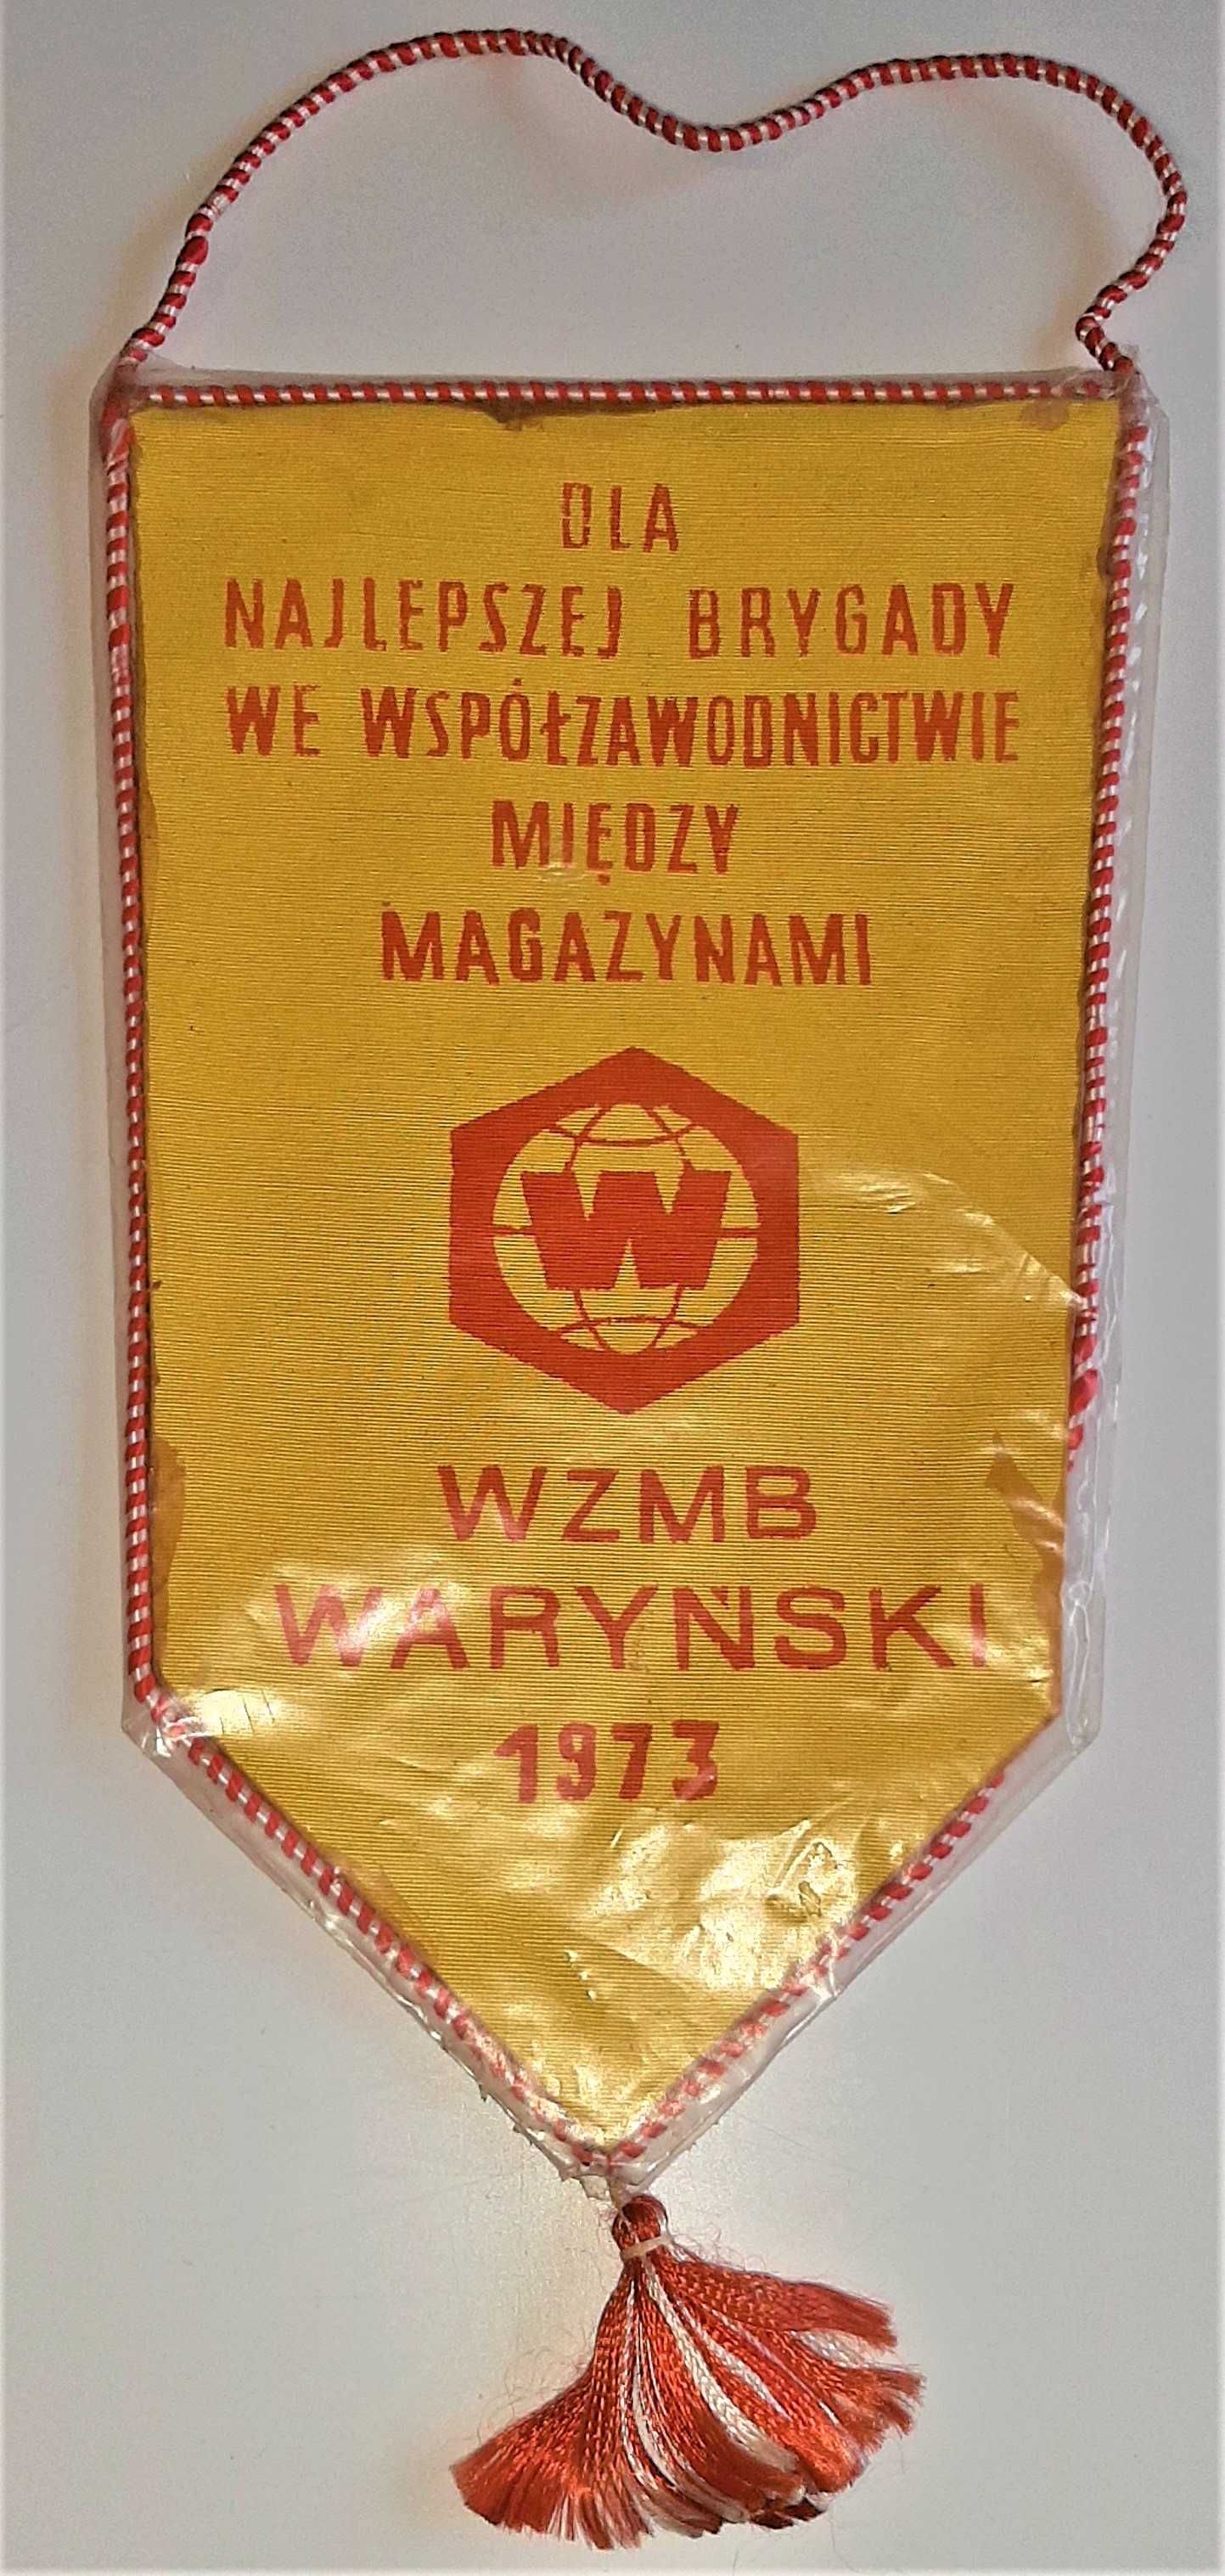 Proporczyk WZMB Waryński Warszawa dla Najlepszej Brygady